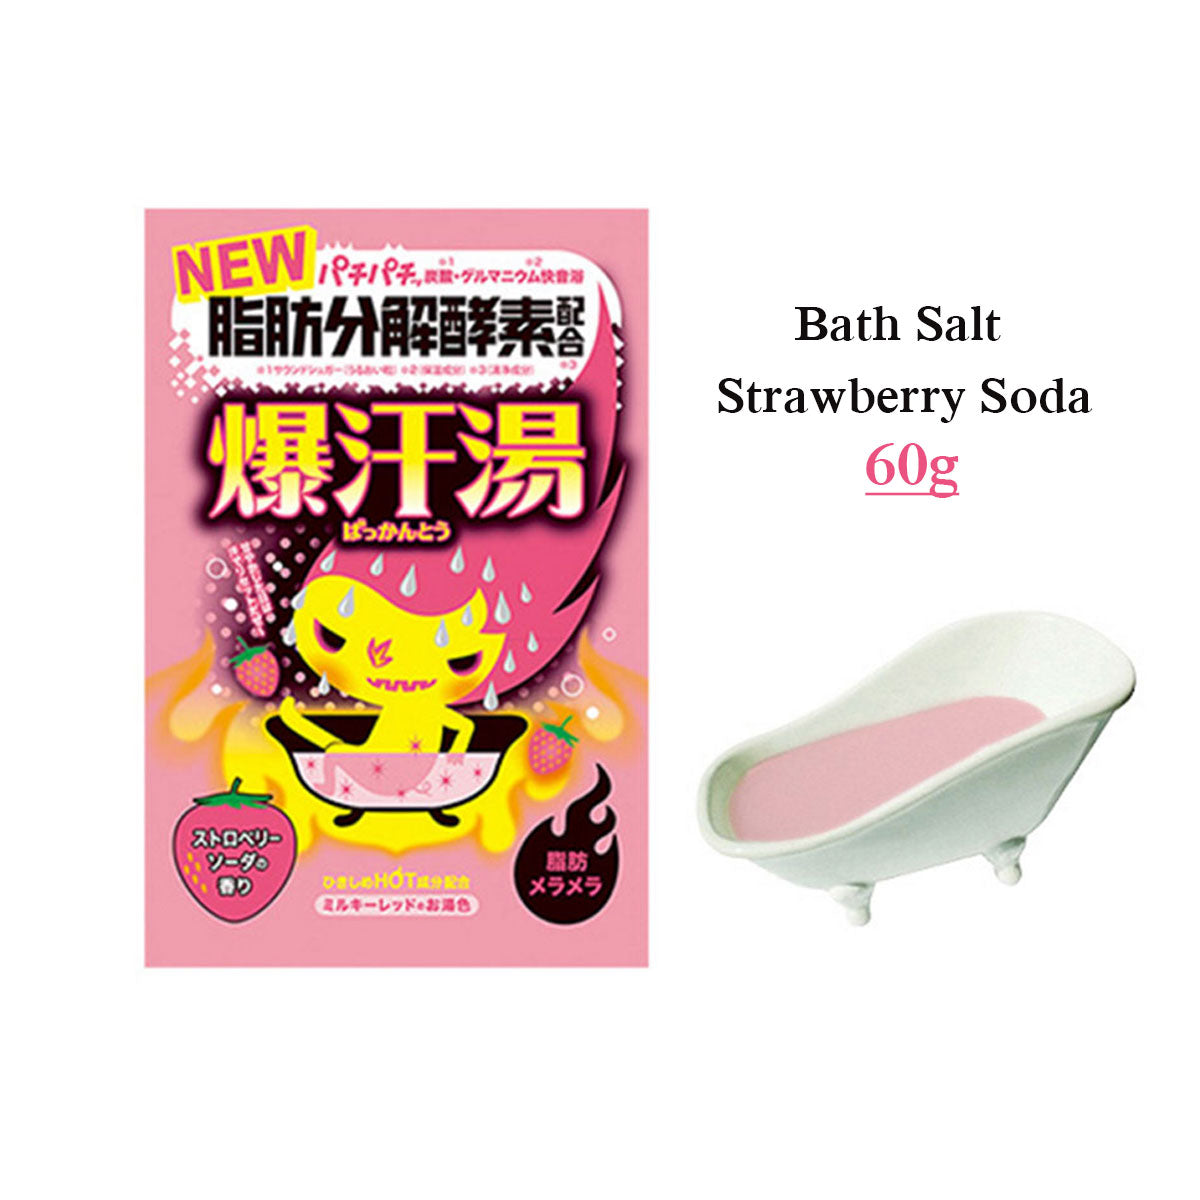 Bath Salt #Strawberry Soda 60g